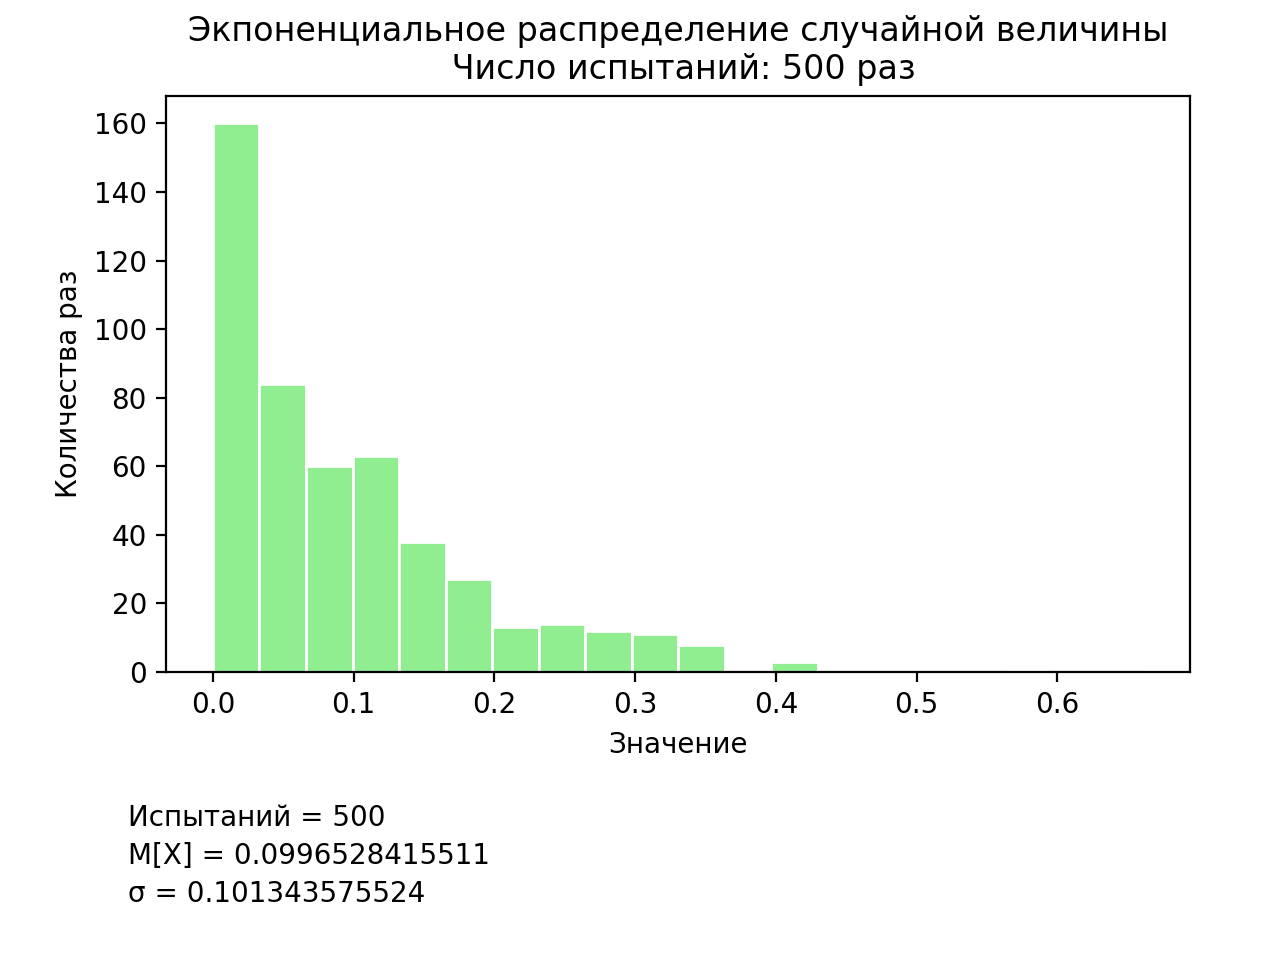 Методы имитационного моделирования вероятностных распределений на языке программирования Python - 4